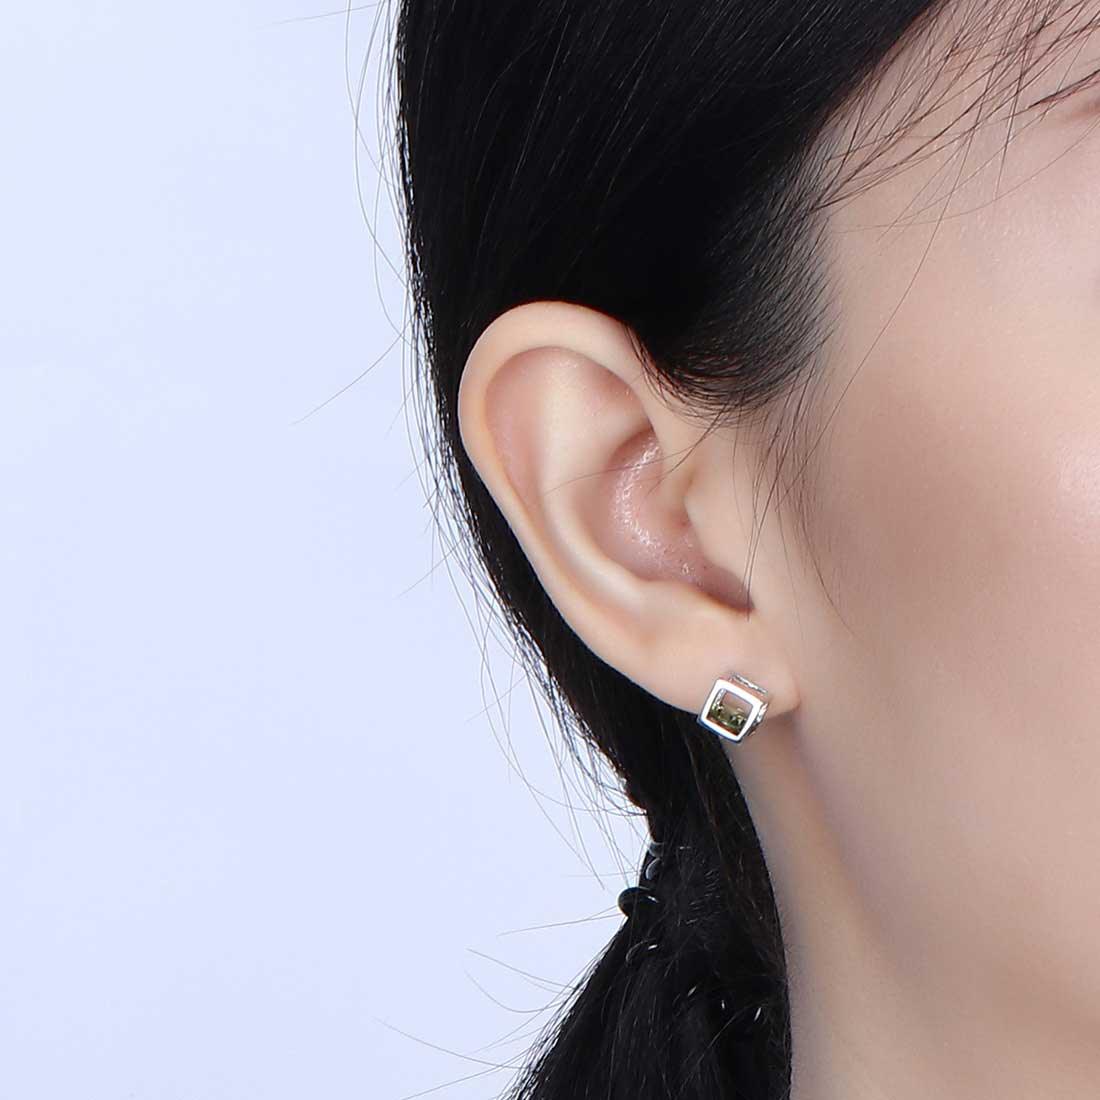 3D Cube Birthstone August Peridot Earrings Sterling Silver - Earrings - Aurora Tears